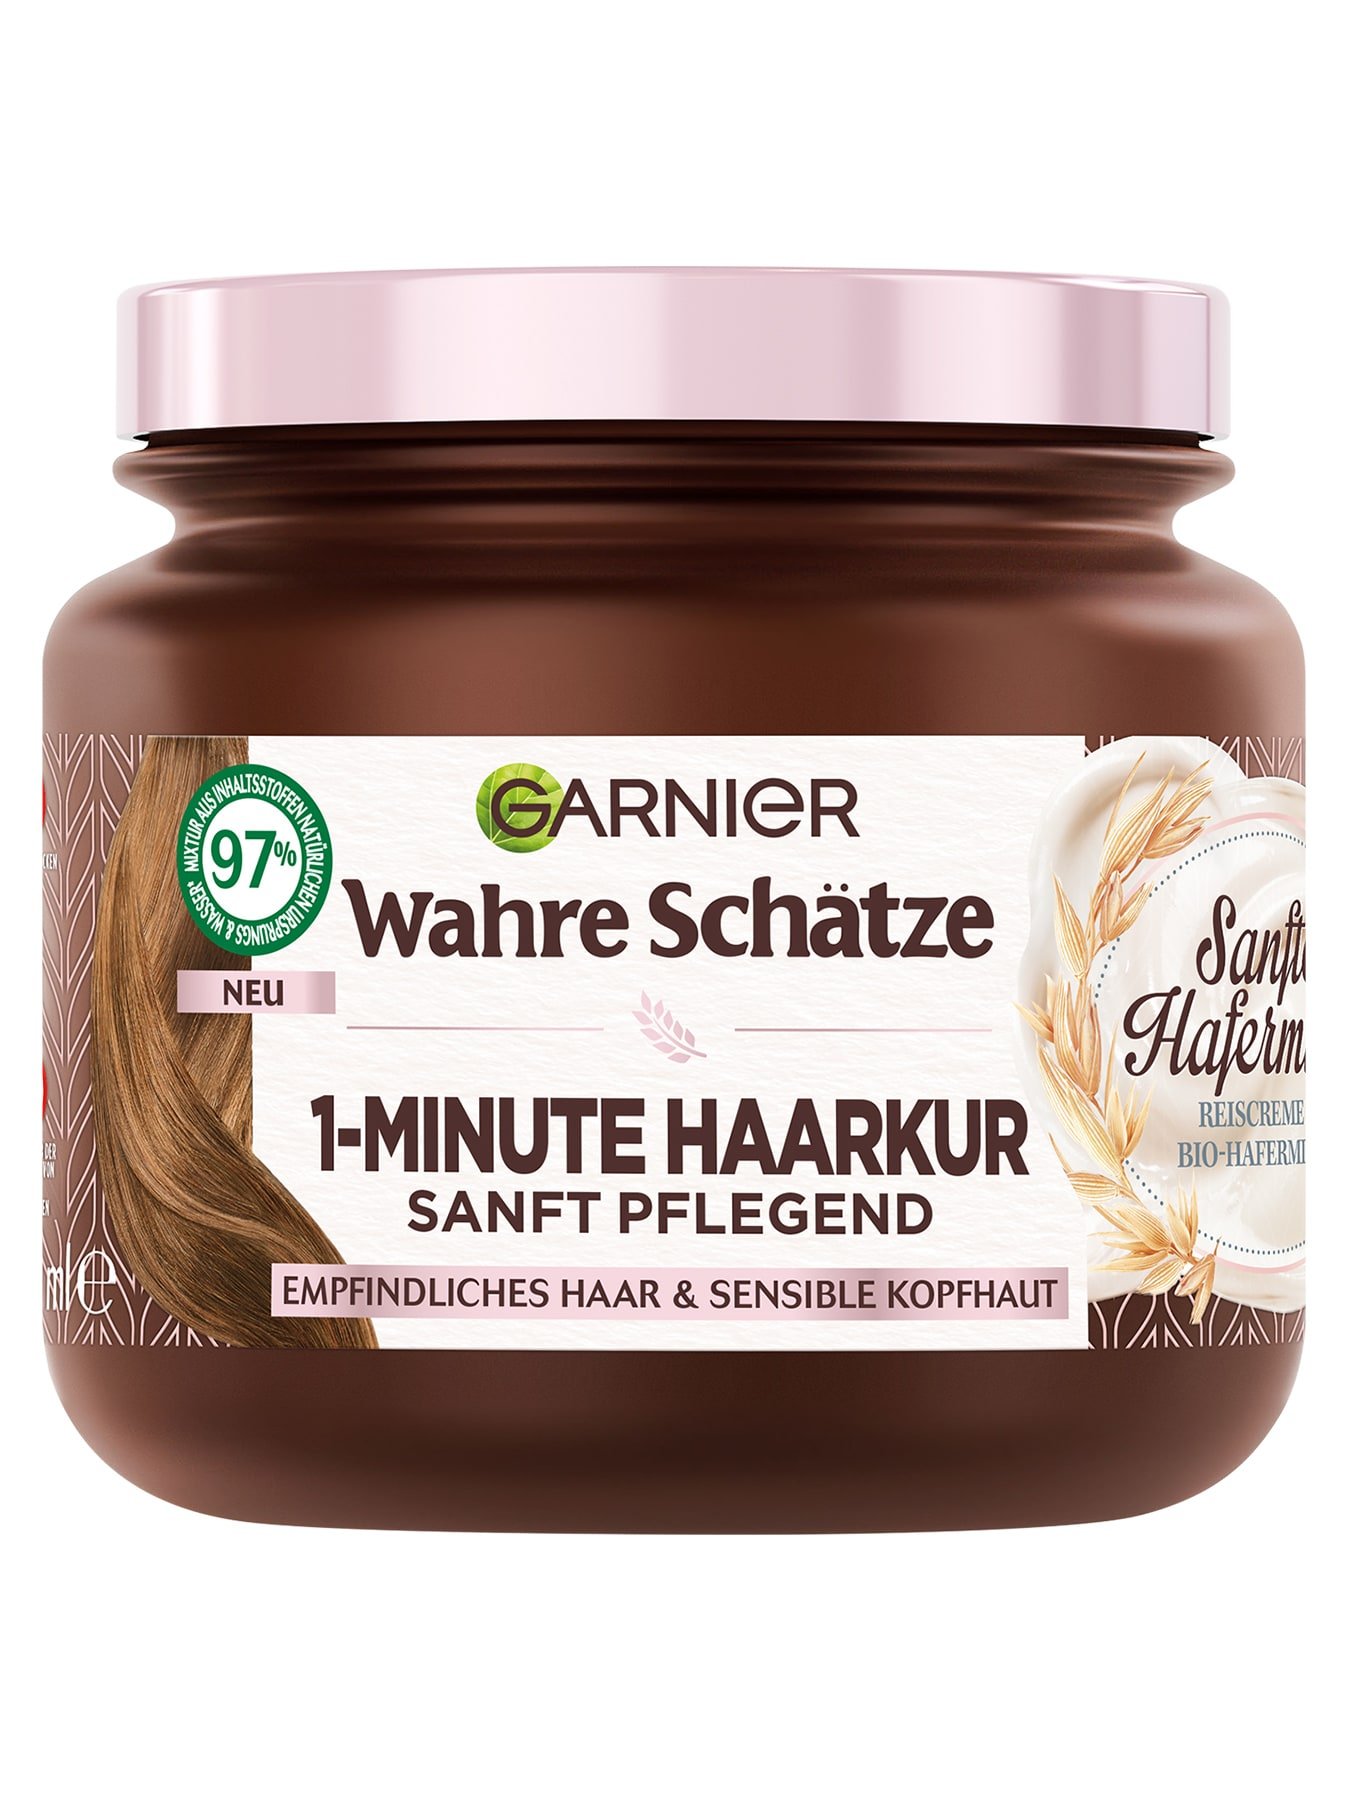 1-Minute Haarkur – Hafermilch für eine sanfte Pflege | Garnier